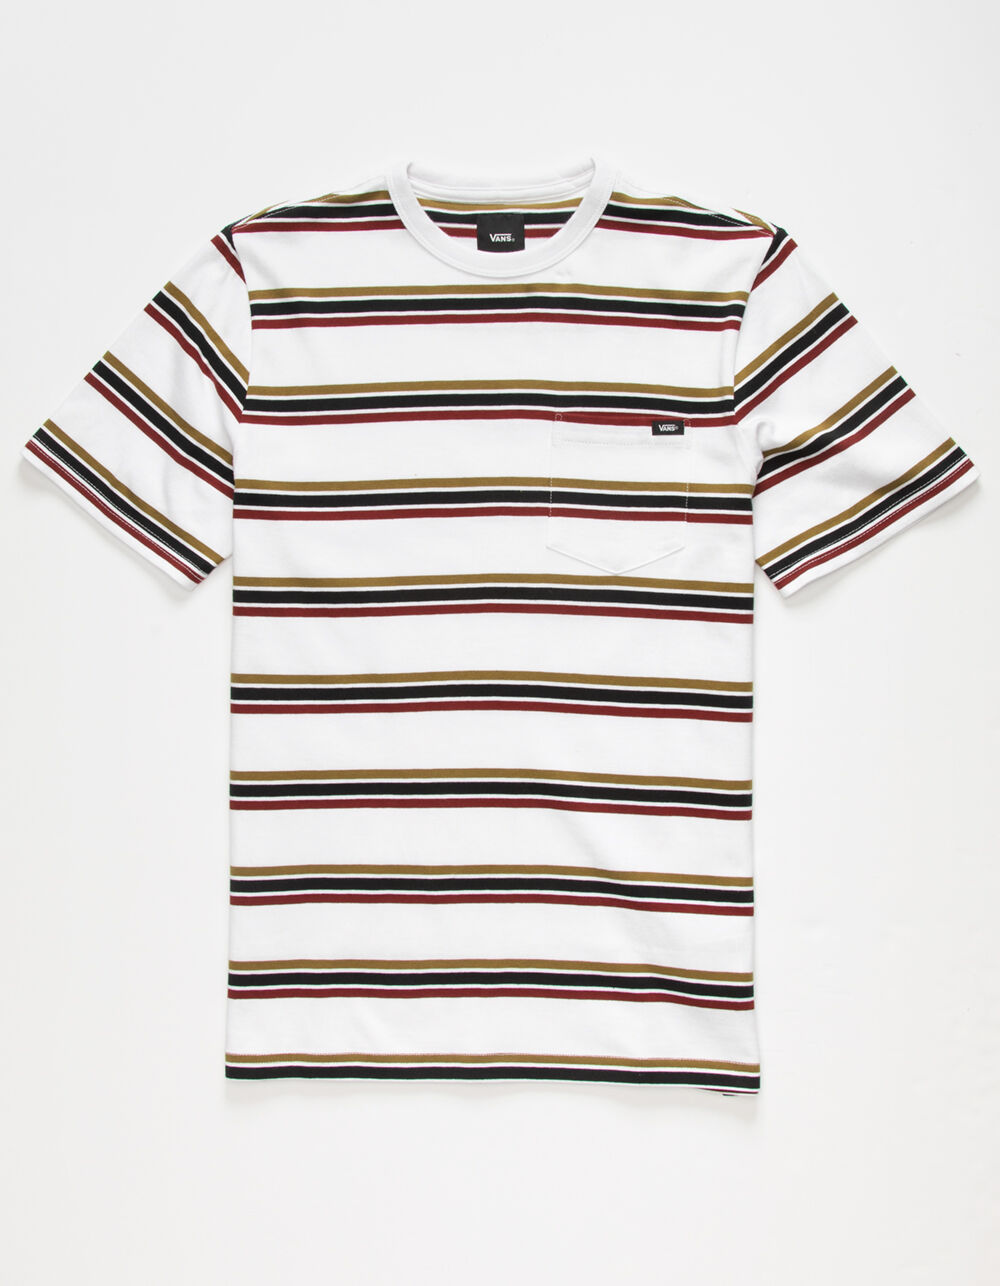 VANS Gibb Stripe Boys Pocket T-Shirt - WHITE | Tillys